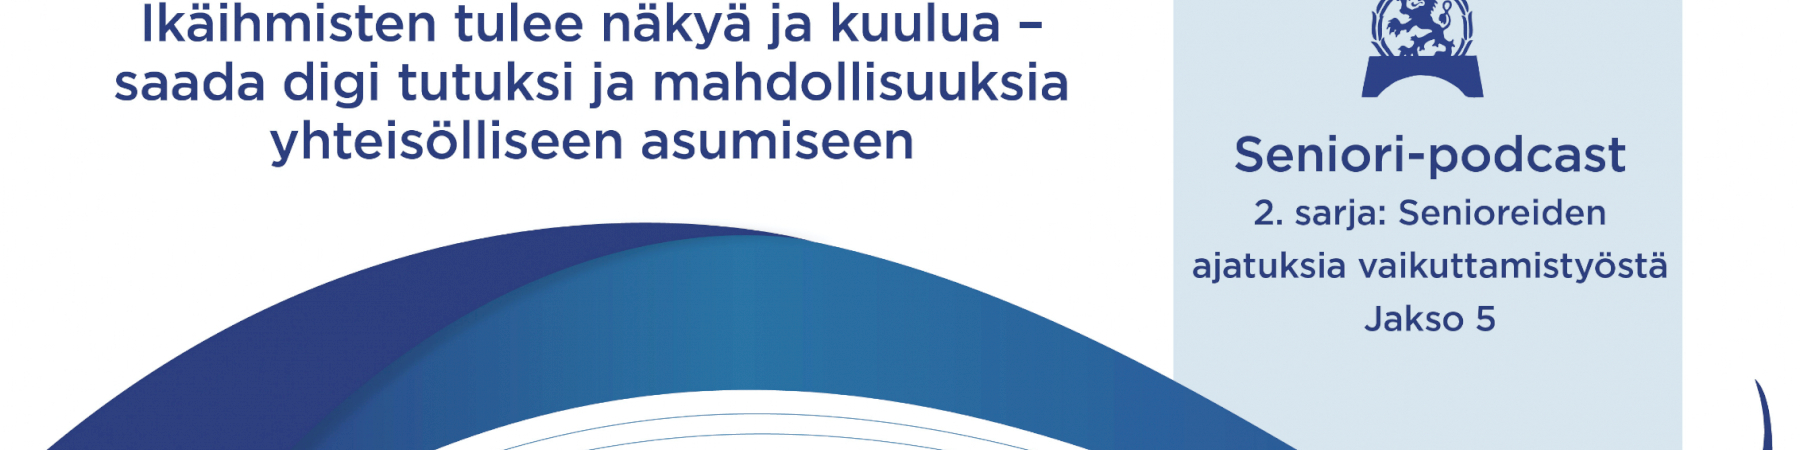 Jakso 5: Marjatta Mänty ja Eija Aittola: Ikäihmisten tulee näkyä ja kuulua – saada digi tutuksi ja mahdollisuuksia yhteisölliseen asumiseen